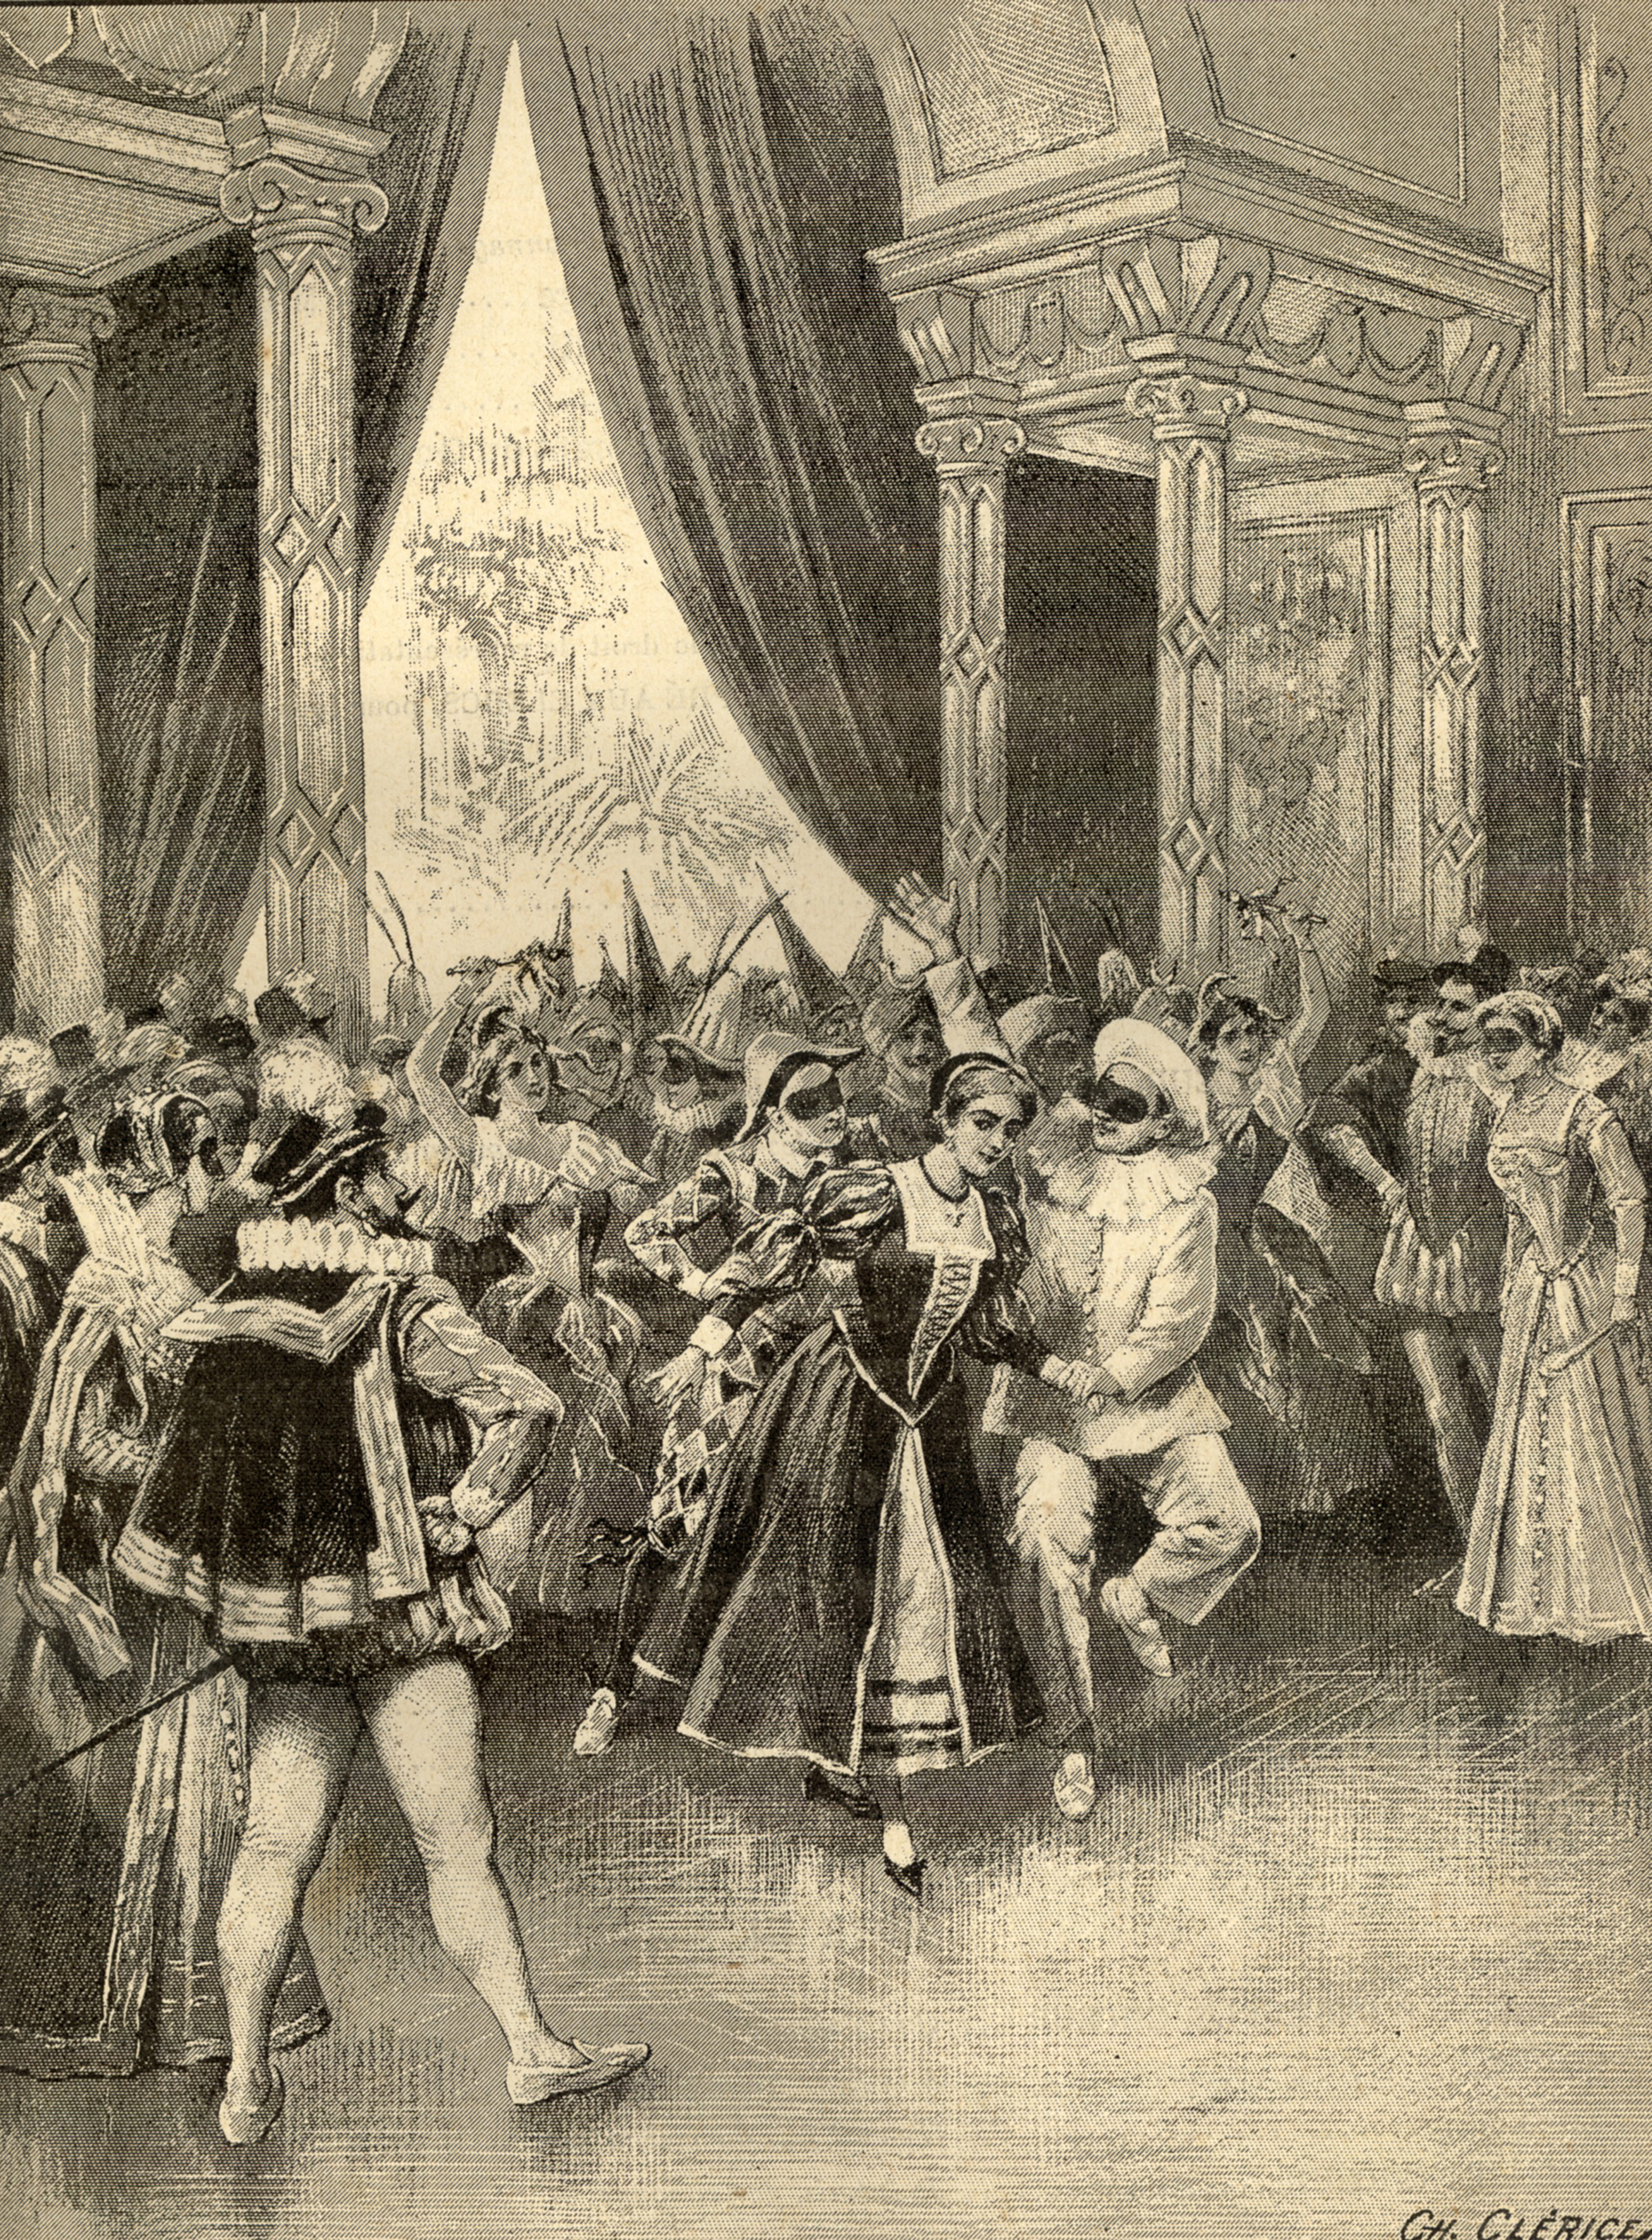 La mascarade de l’acte II, dans une illustration du XIXe siècle.